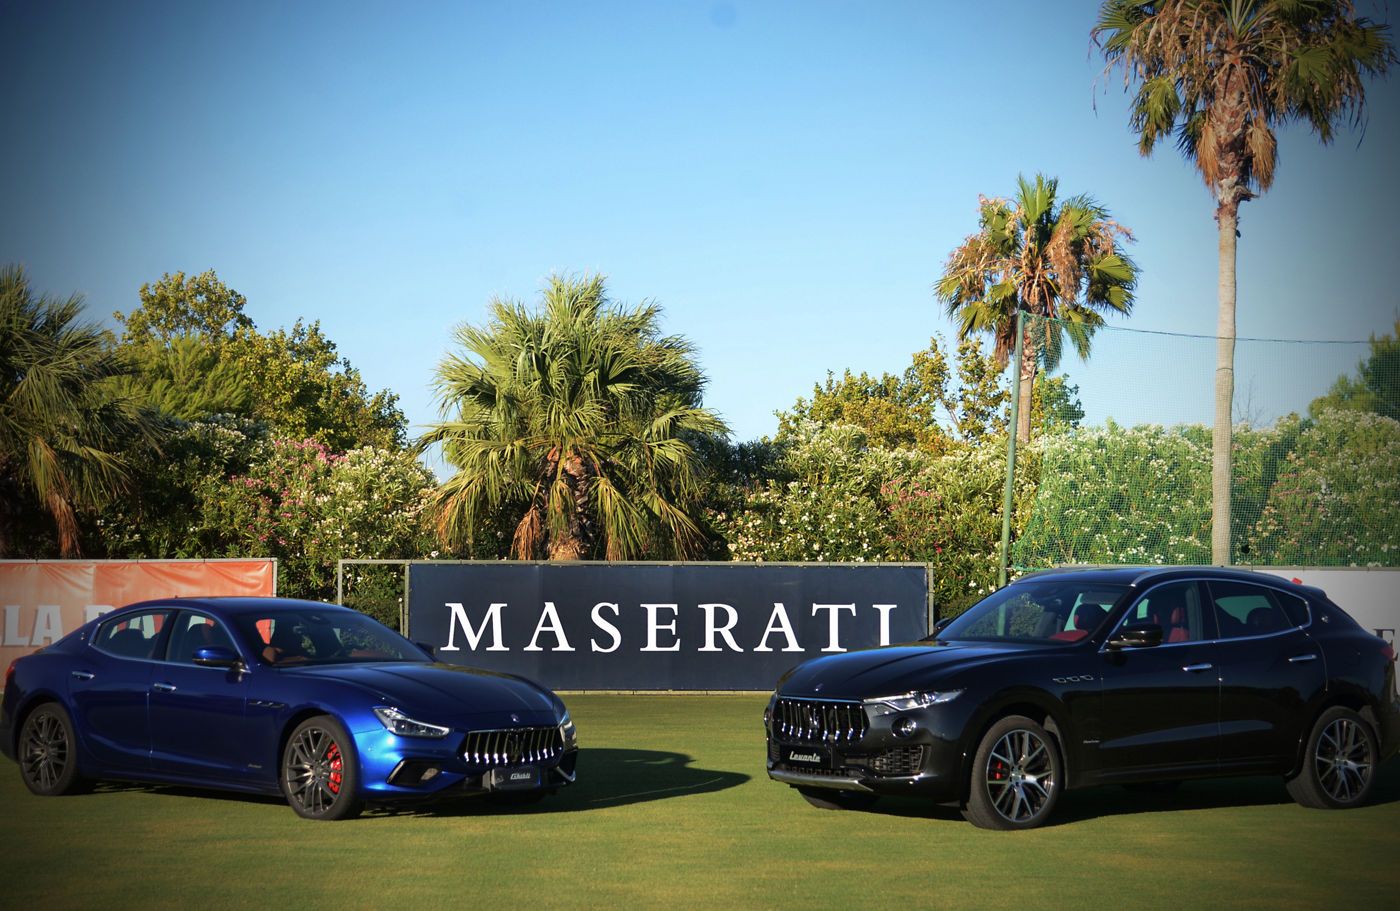 Maserati Ghibli and Maserati Levante at Santa Maria Polo Club Sotogrande